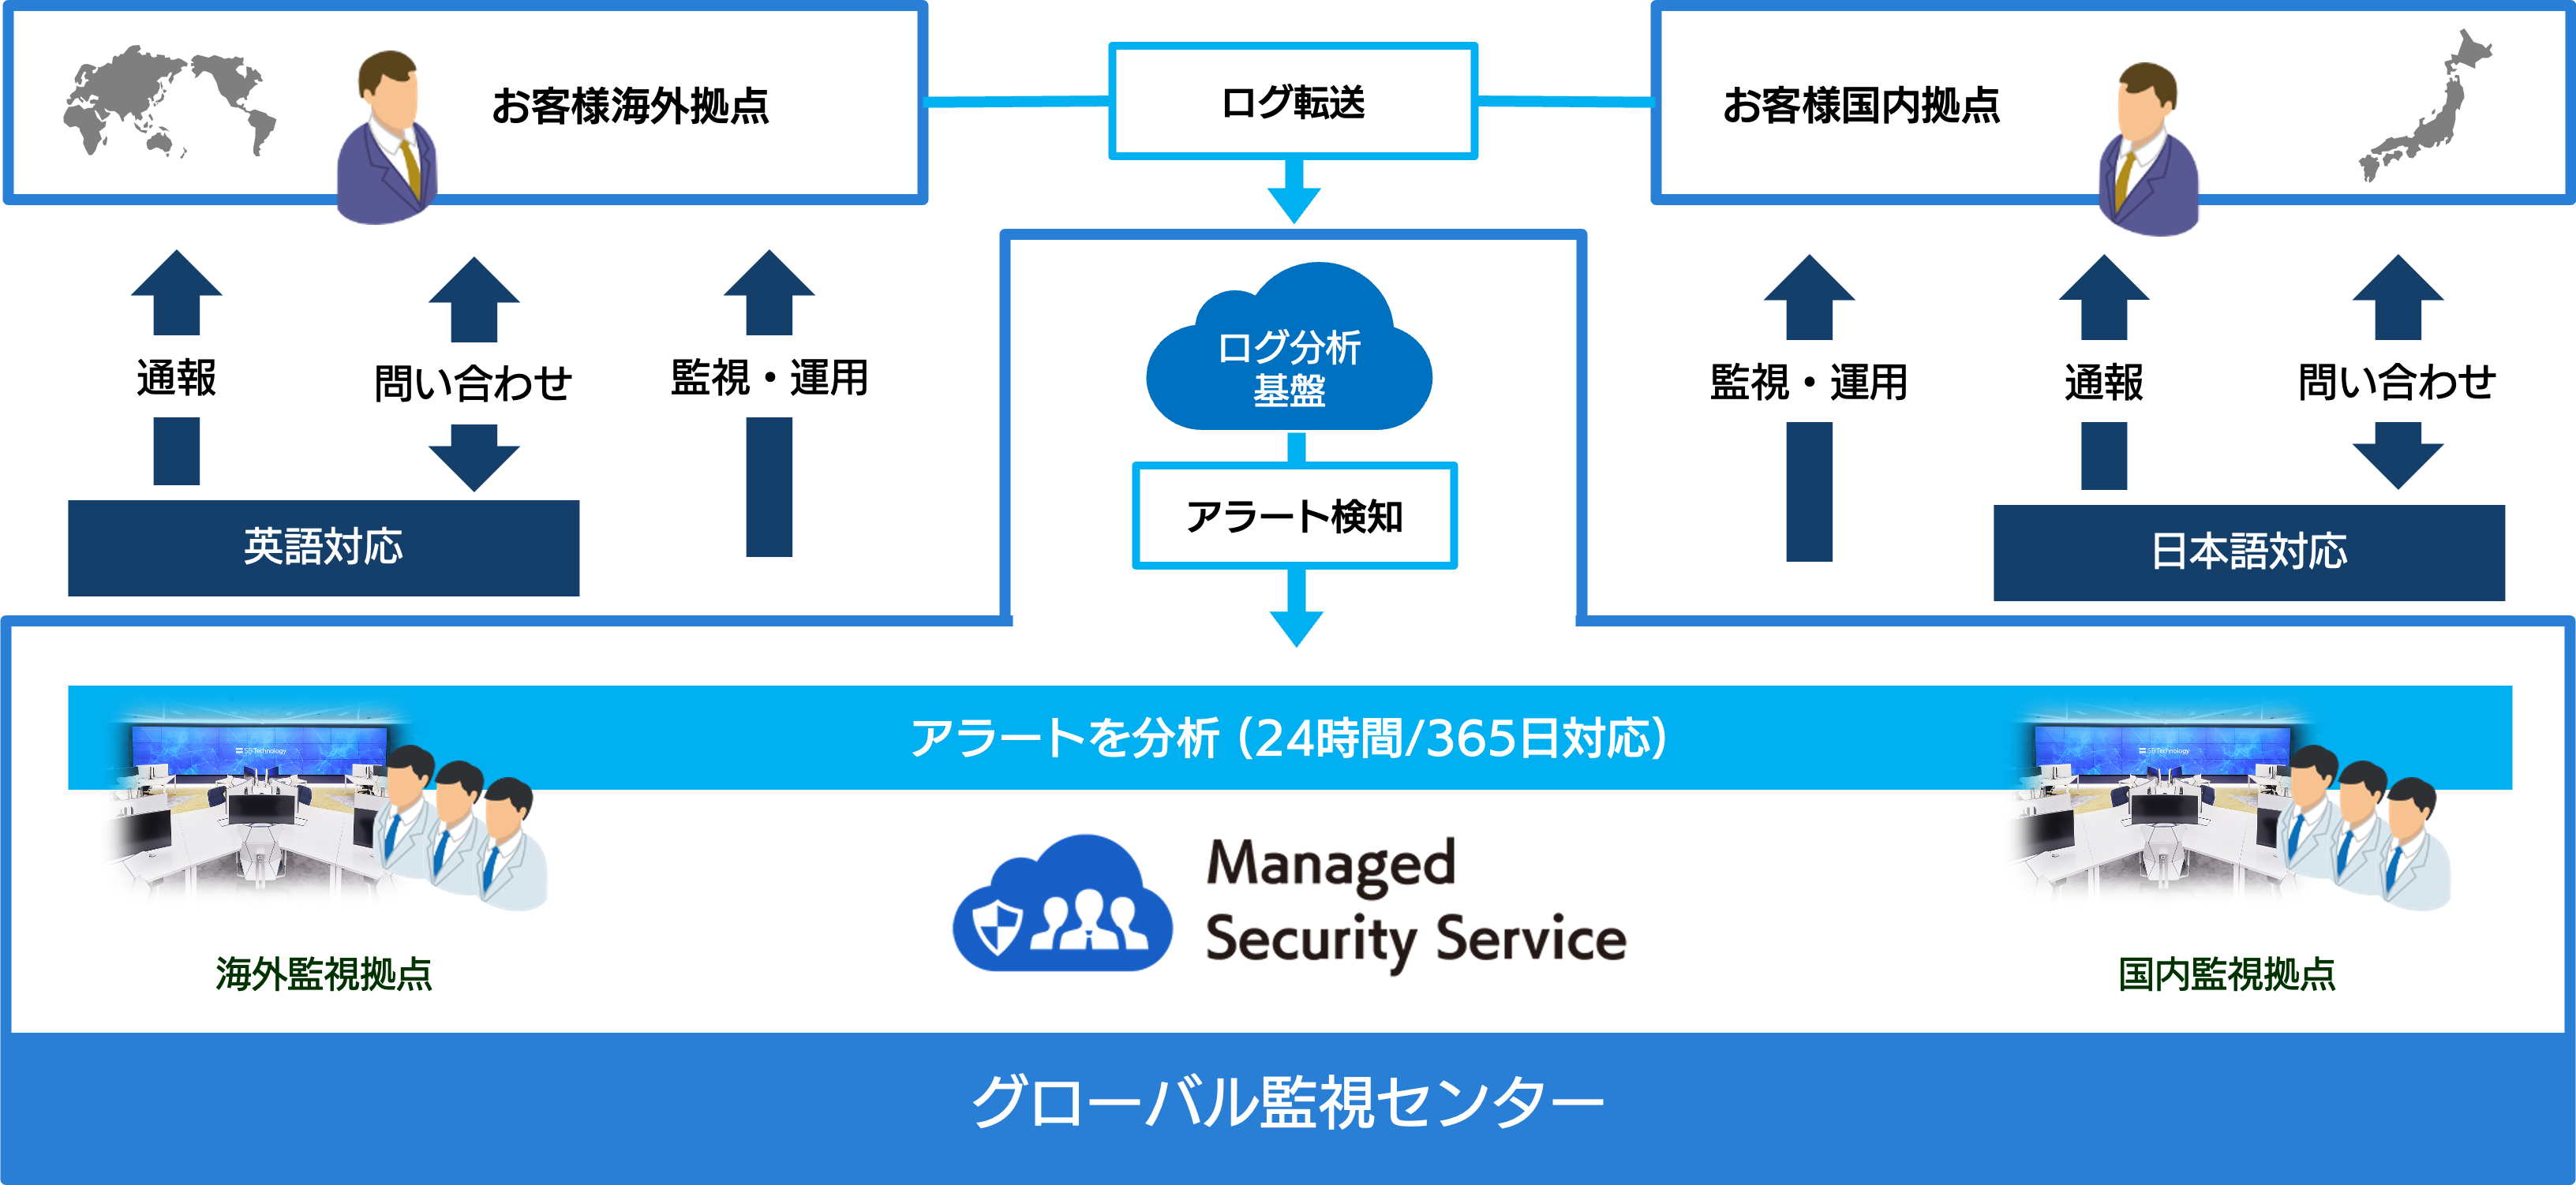 グローバル展開する企業がマネージドセキュリティサービスを導入した場合の流れの図